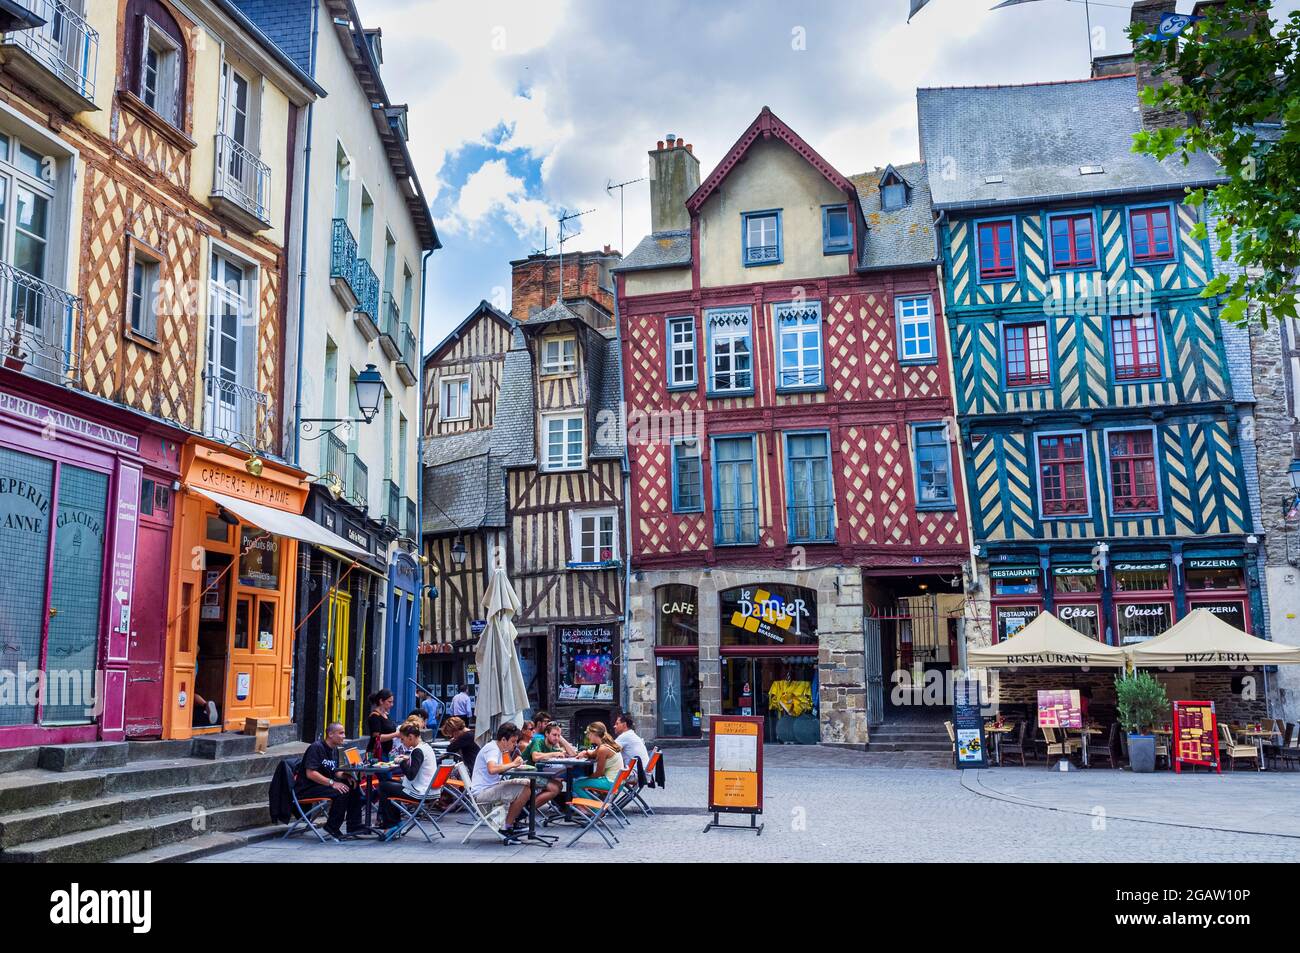 Bâtiments à colombages colorés avec des acheteurs à Rennes, Bretagne, France. Personnes assises dans des restaurants en plein air. Banque D'Images